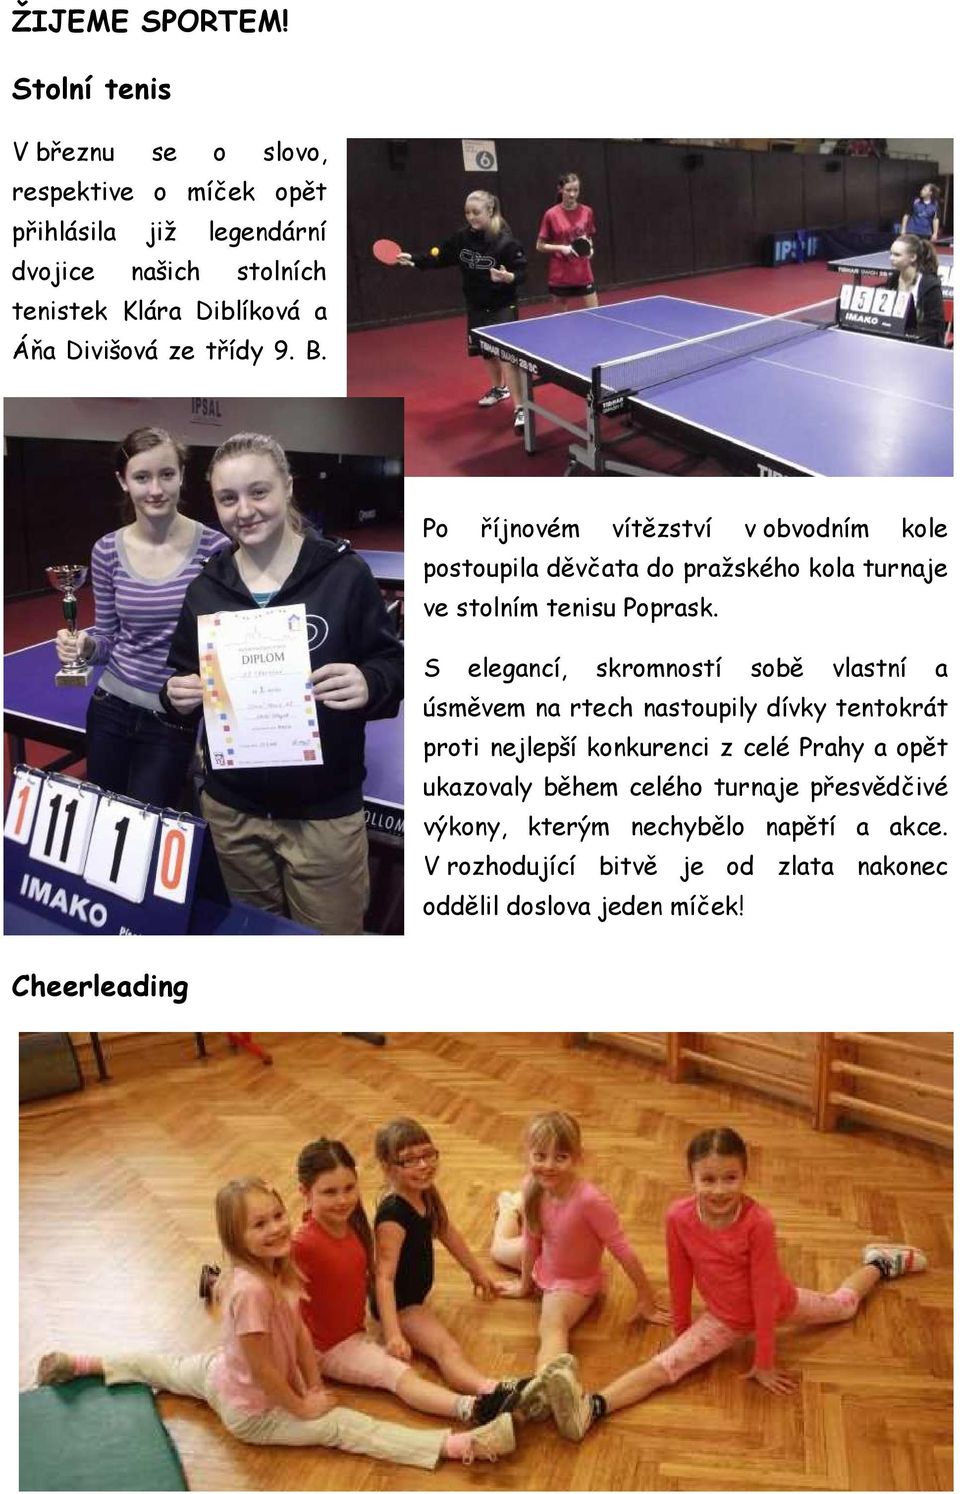 Divišová ze třídy 9. B. Po říjnovém vítězství v obvodním kole postoupila děvčata do pražského kola turnaje ve stolním tenisu Poprask.